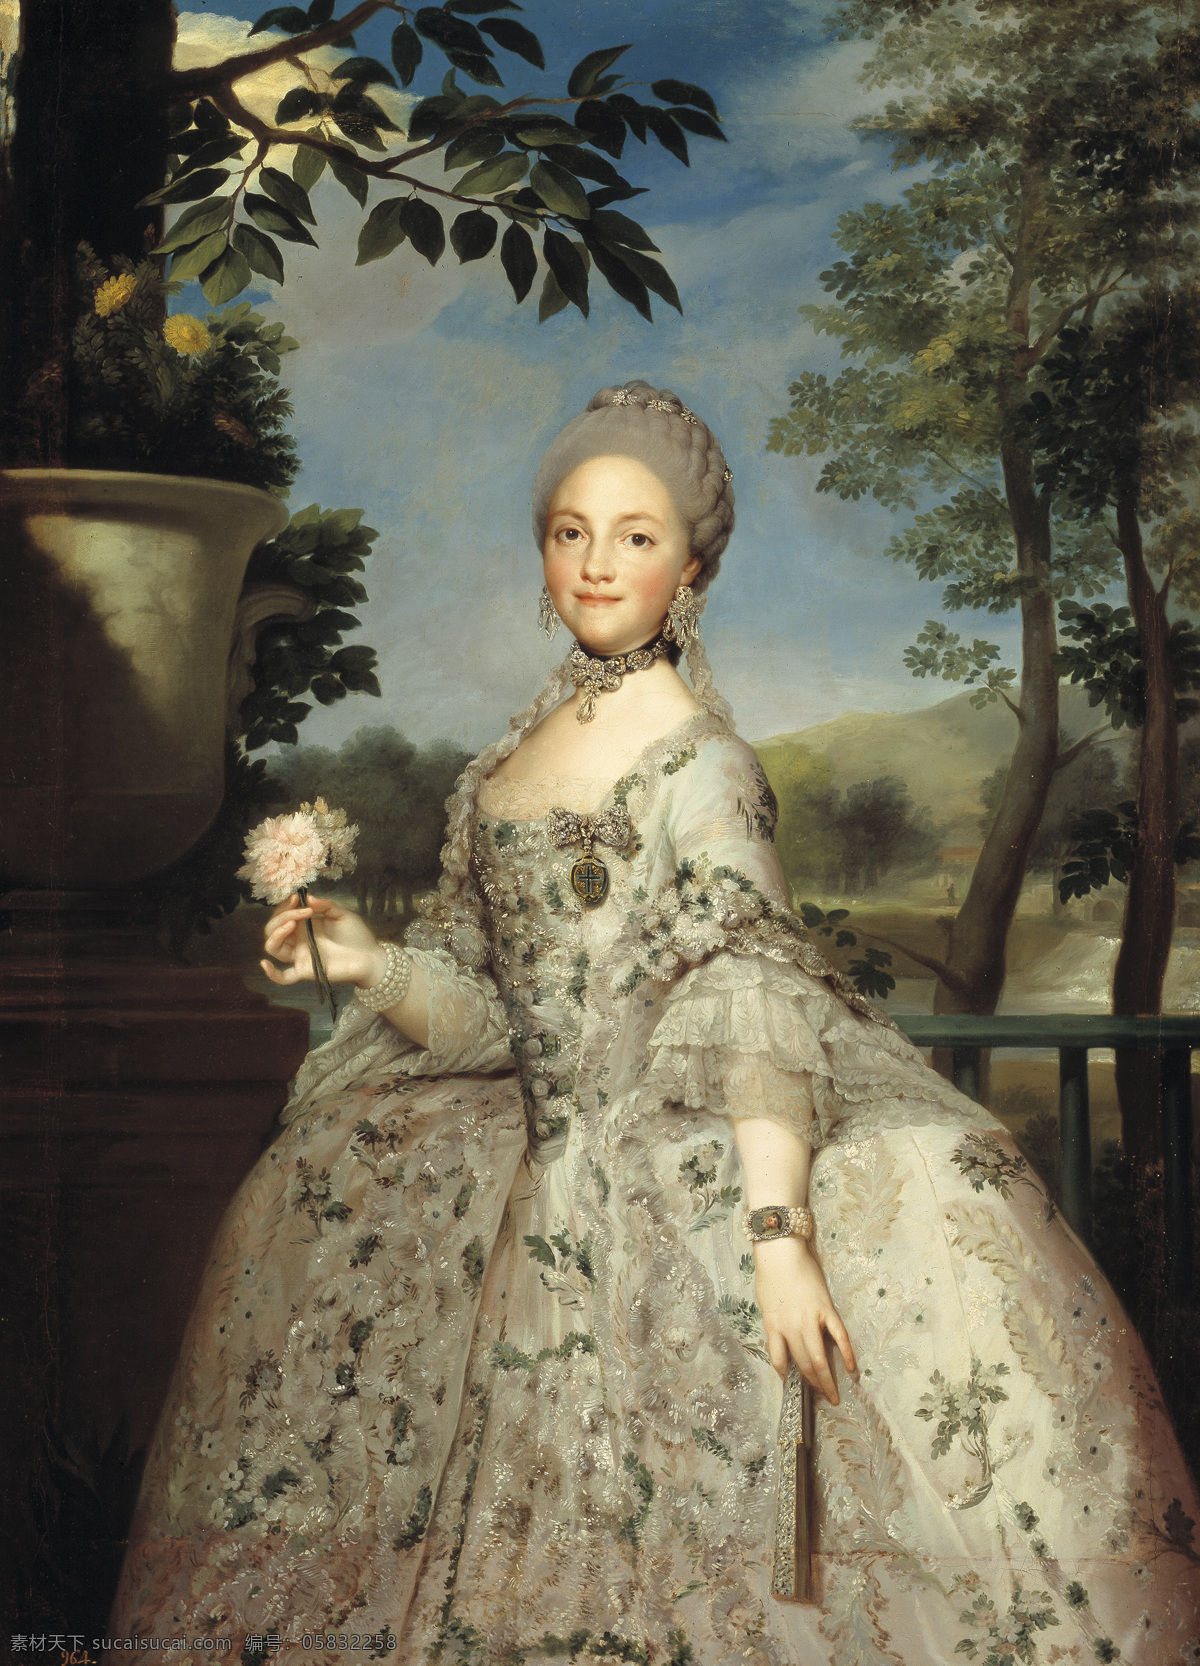 路易斯王后 西班牙公主 帕尔玛公主 卡罗斯 三世 王后 四世 母 18世纪油画 油画 绘画书法 文化艺术